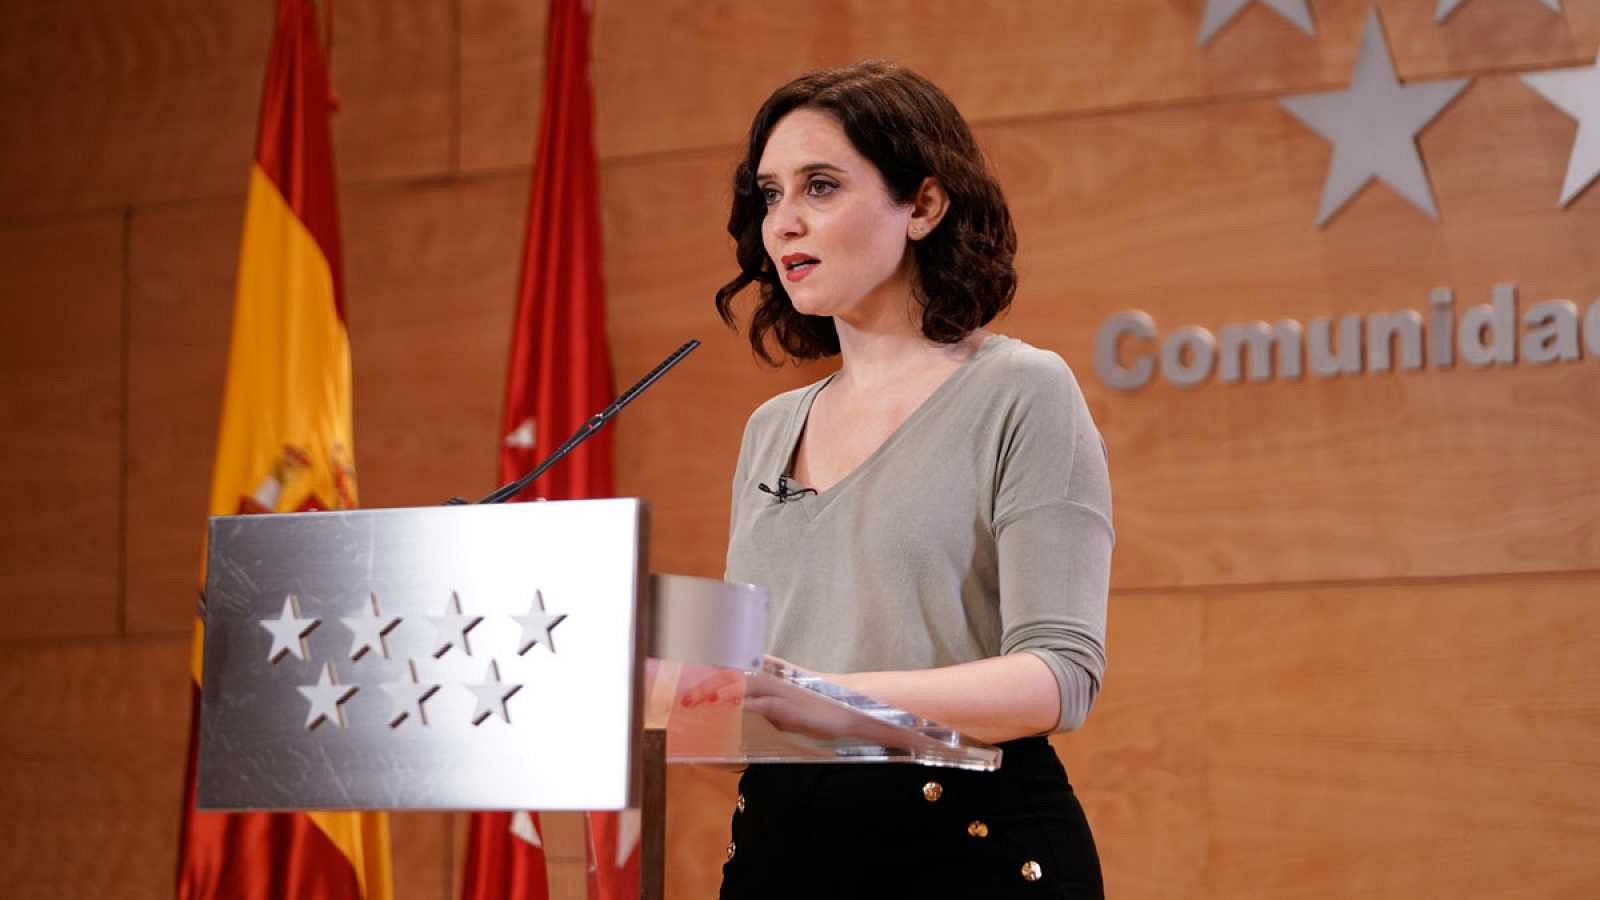  La presidenta de la Comunidad de Madrid, Isabel Díaz Ayuso, en una imagen de archivo.